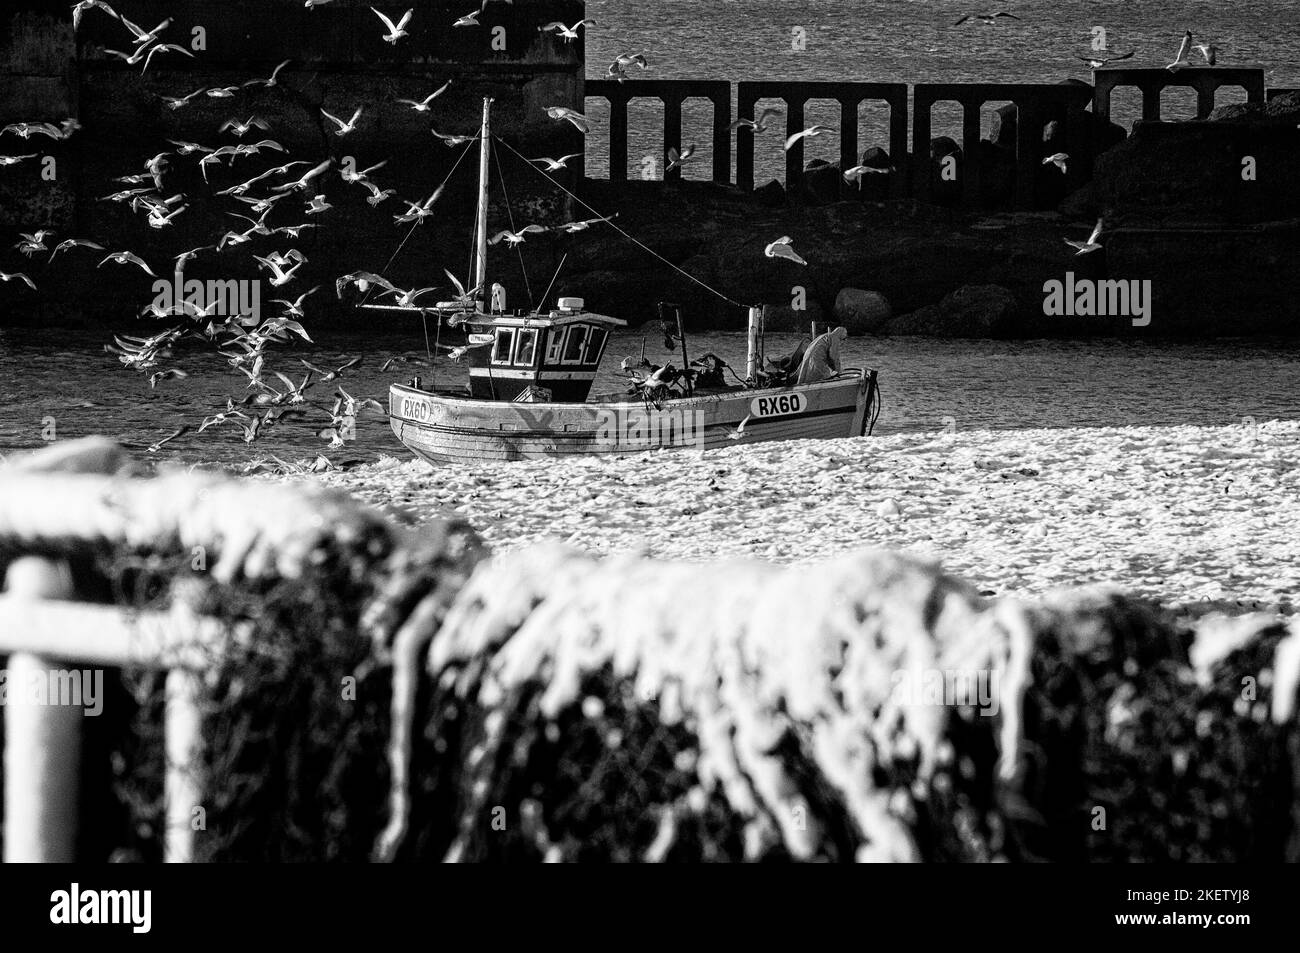 La playa de pesca Stade, el casco antiguo, Hastings. Los pescadores traen sus capturas a casa en una playa cubierta de nieve con una bandada de gaviotas de arenque a su alrededor. East Sussex. Inglaterra. REINO UNIDO Foto de stock